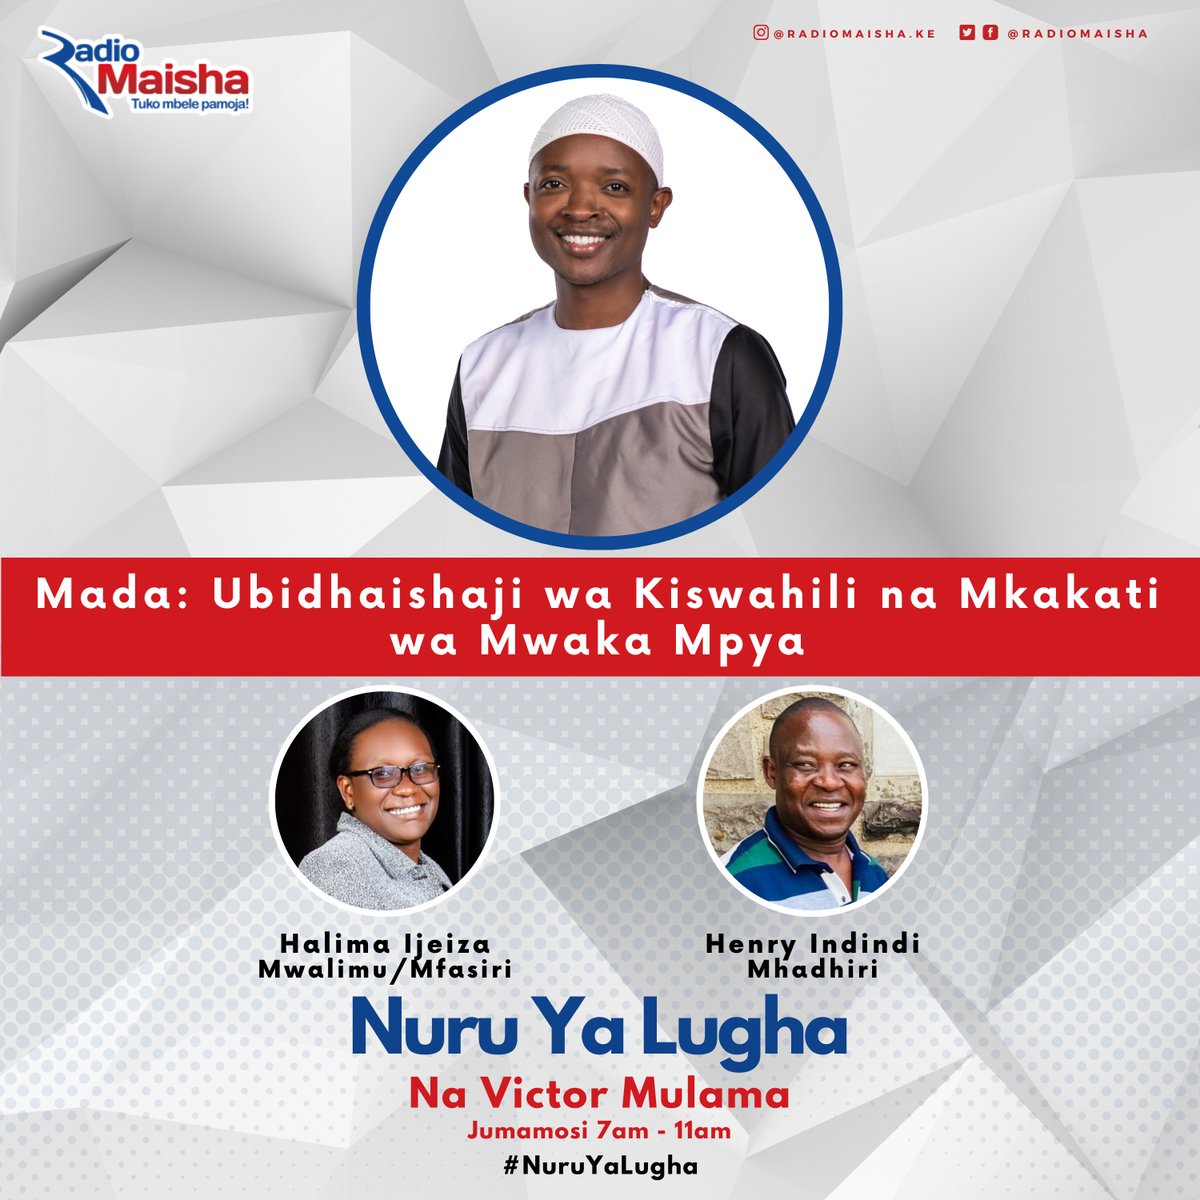 Unaendelea kuelimika kwenye Nuru ya Lugha na Victor Mulama katika Radio Maisha. Tuko Mbele Pamoja. #NuruYaLugha